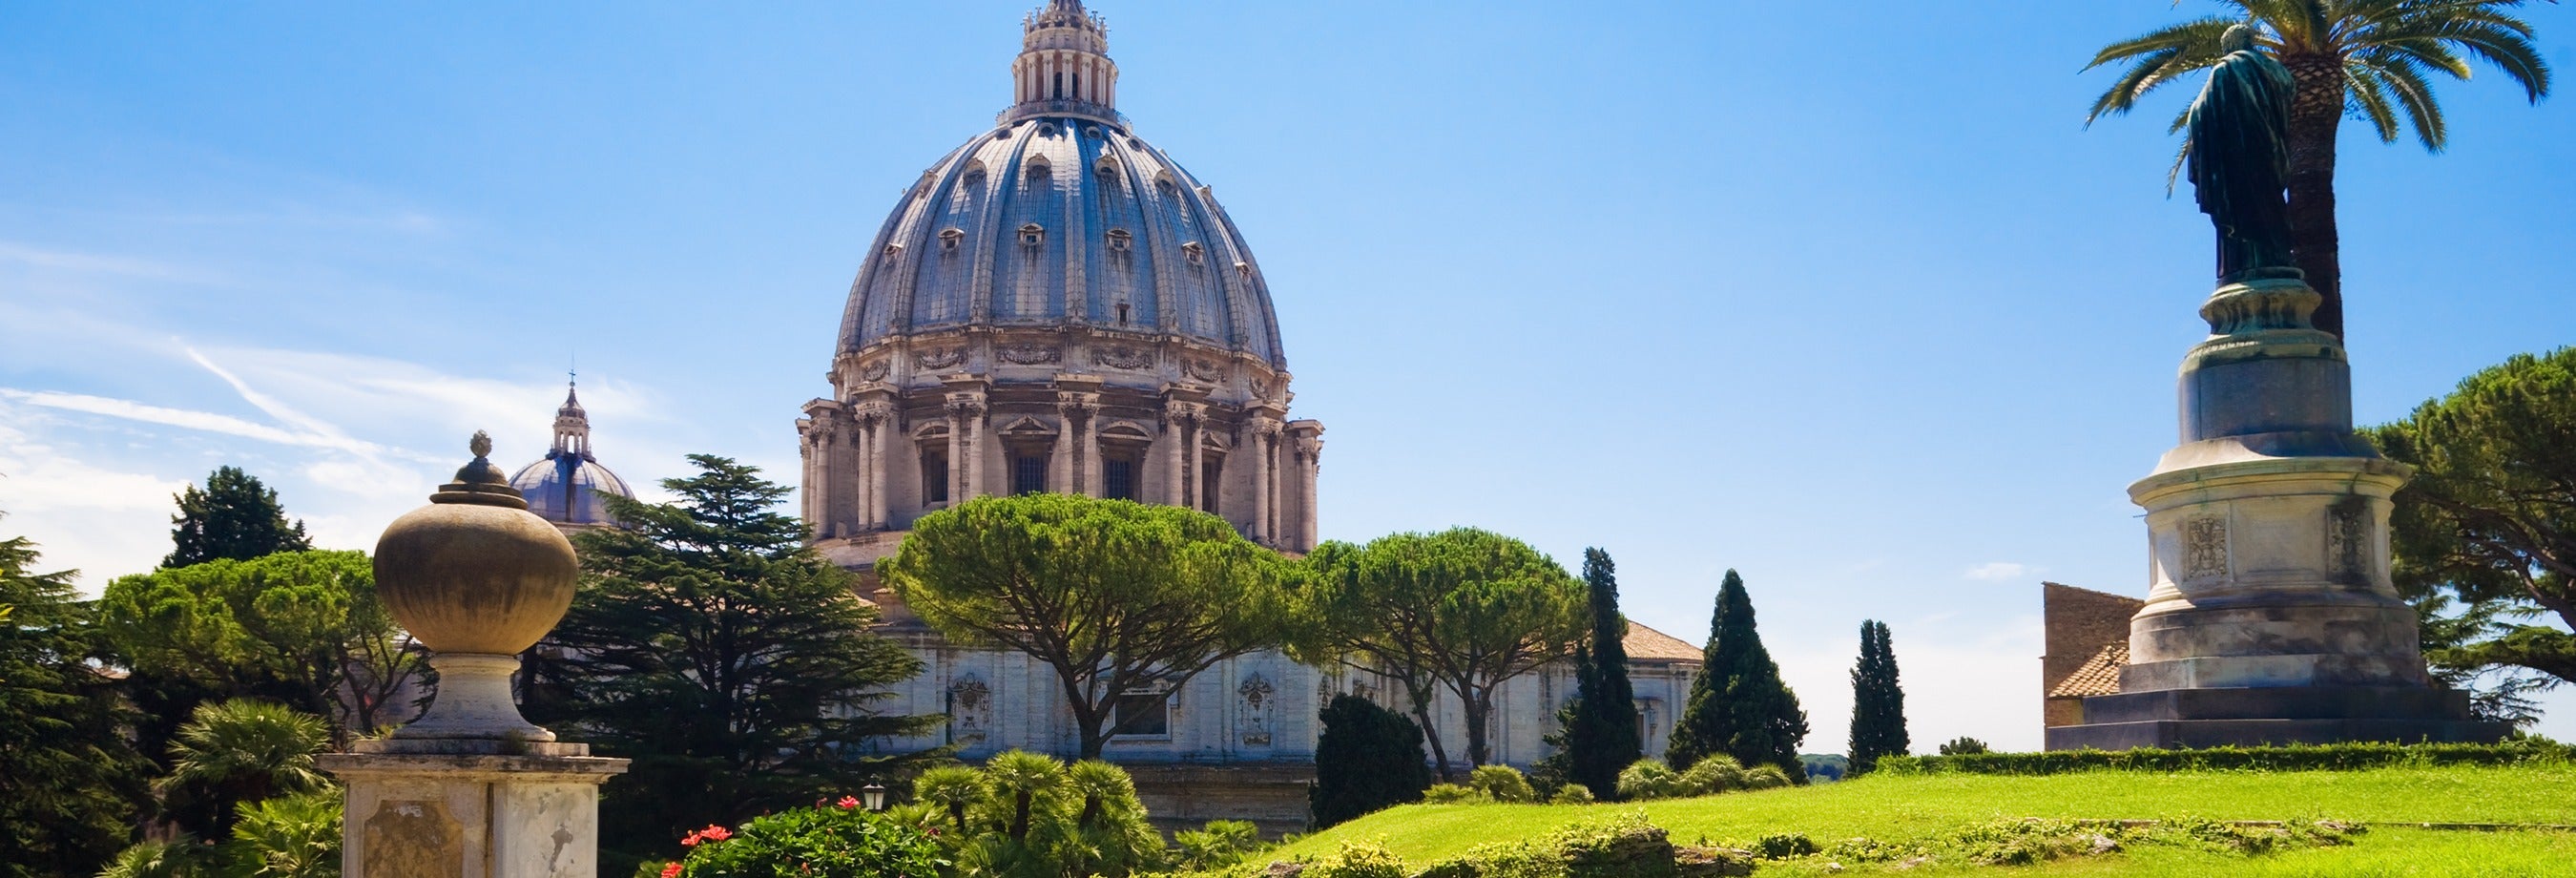 Ingresso dos Jardins Vaticanos, Museus Vaticanos e Capela Sistina